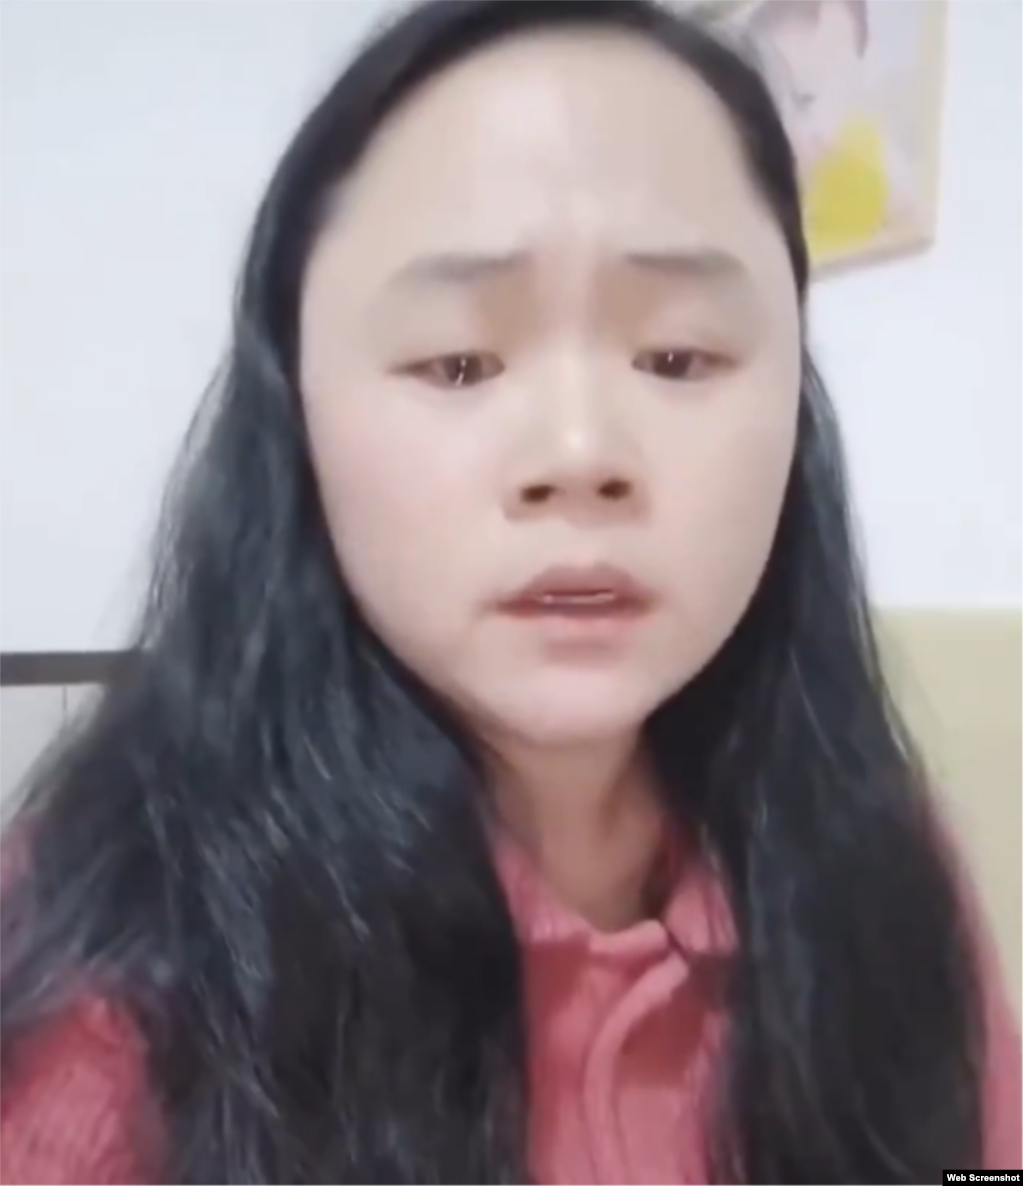 泼墨习近平画像的湖南女孩董瑶琼含泪呼吁外界关注她目前受到当局监控和压制的状况。（2020年12月1日）(photo:VOA)